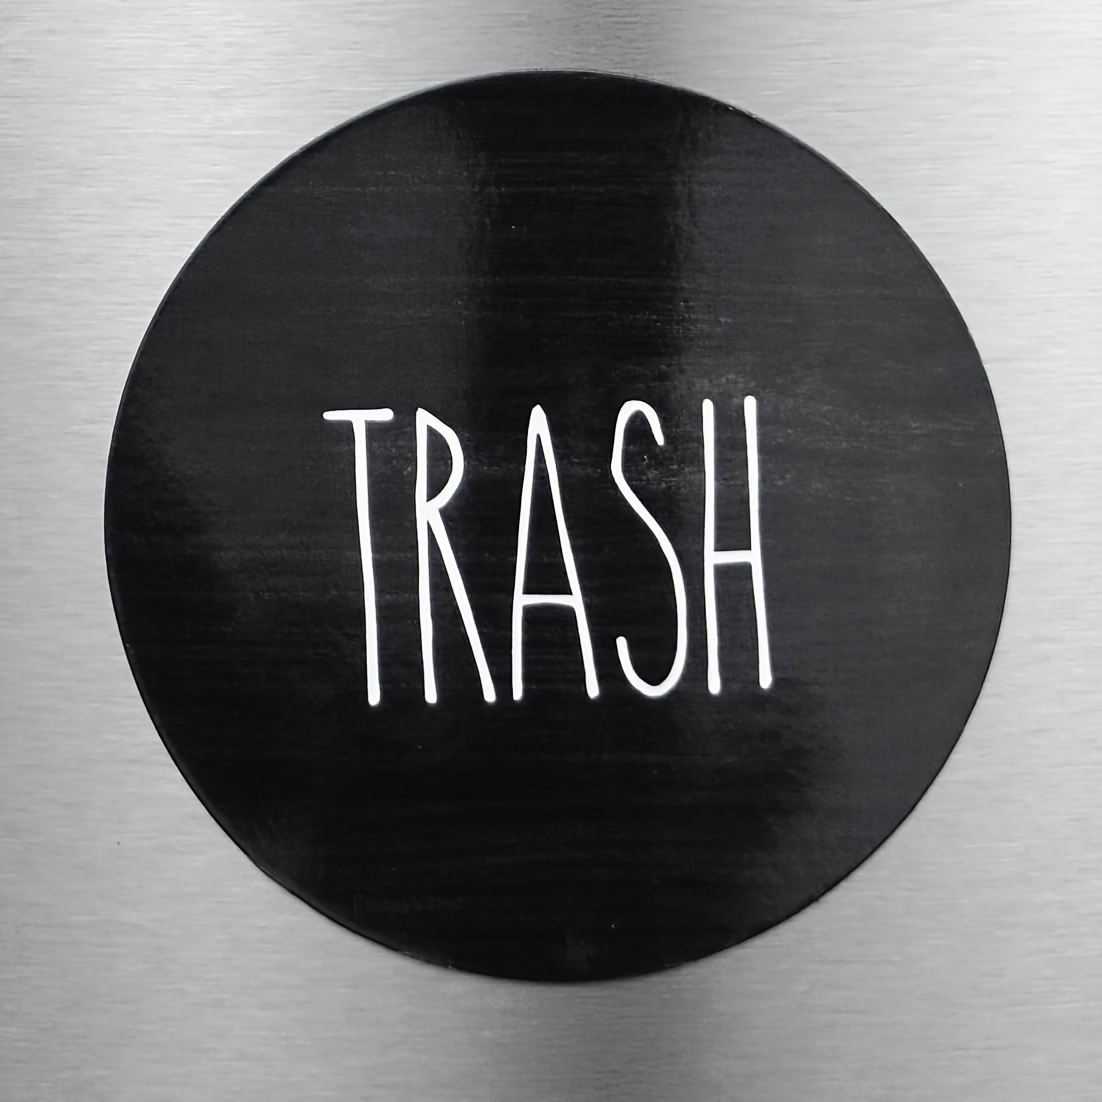 2 Stück Recycling-Logo, Magnetischer Mülleimer-Aufkleber Für  Küchen-Mülleimer Und Recycling-Behälter, Zum Organisieren Ihres Mülleimers  – Müll- Und Recycling-Magnet-Kombination Für Mülleimer-Logo-Symbol,  Bauernhaus-Mülleimer-Logo-Symbol, Magnet-Logo